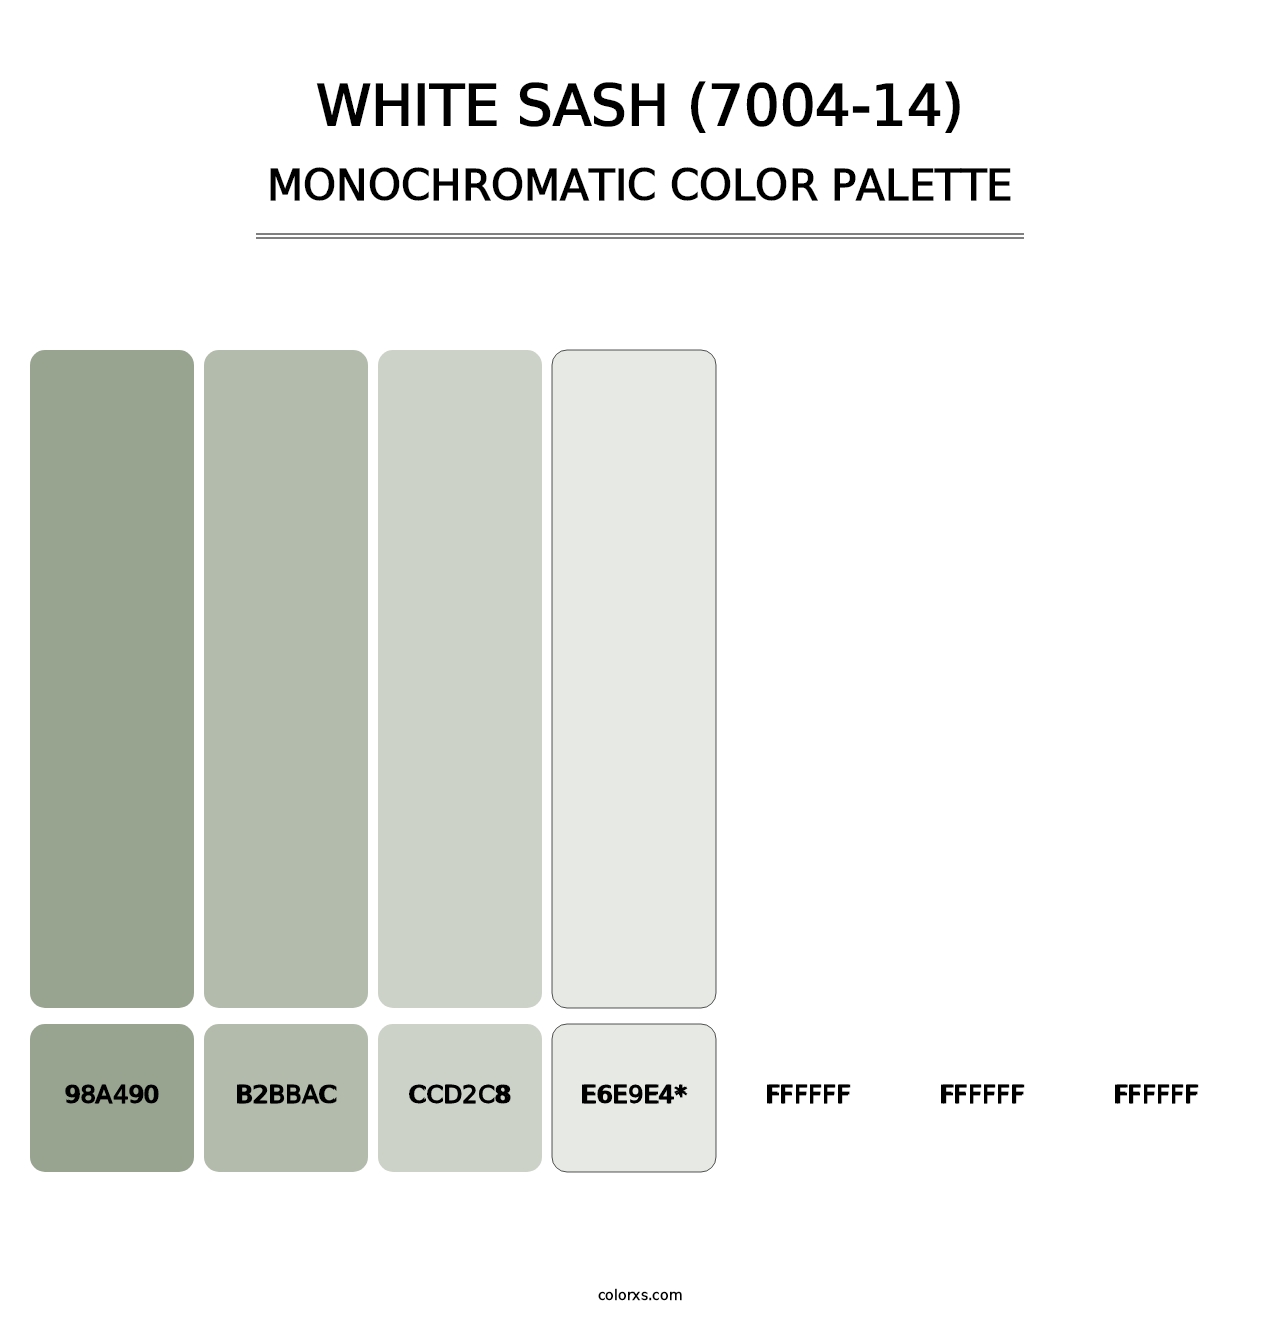 White Sash (7004-14) - Monochromatic Color Palette